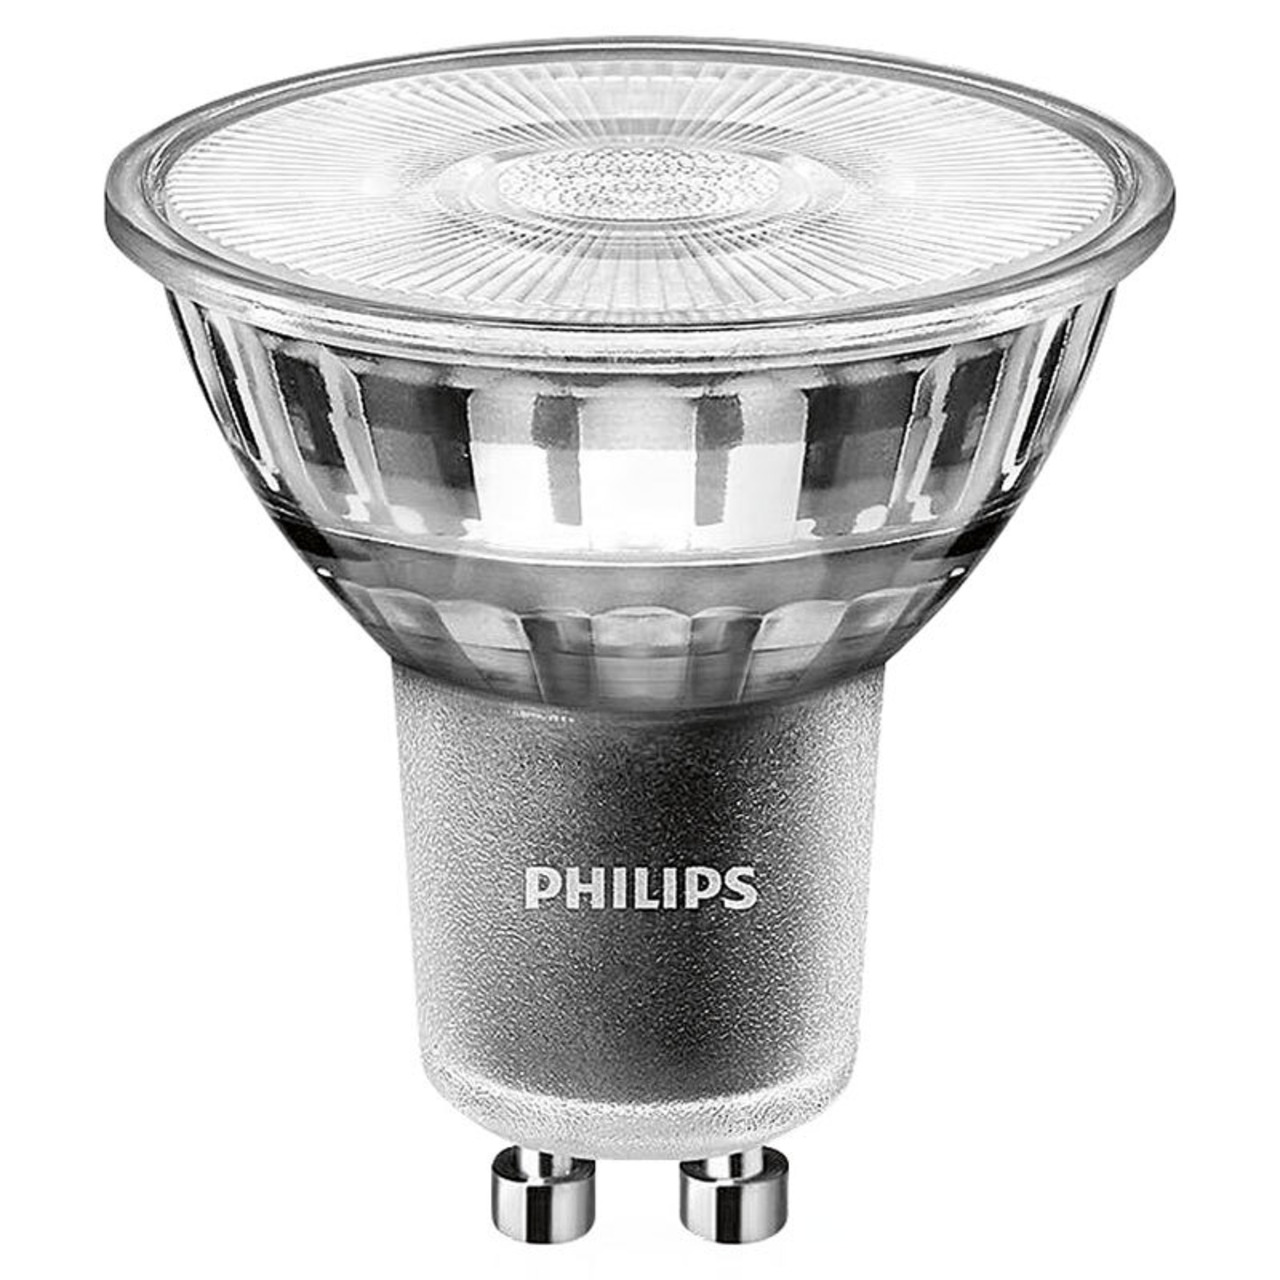 Philips MASTER ExpertColor 5-5-W-GU10-LED-Lampe- 97 Ra- 4000K- neutralweiss- dimmbar unter Beleuchtung